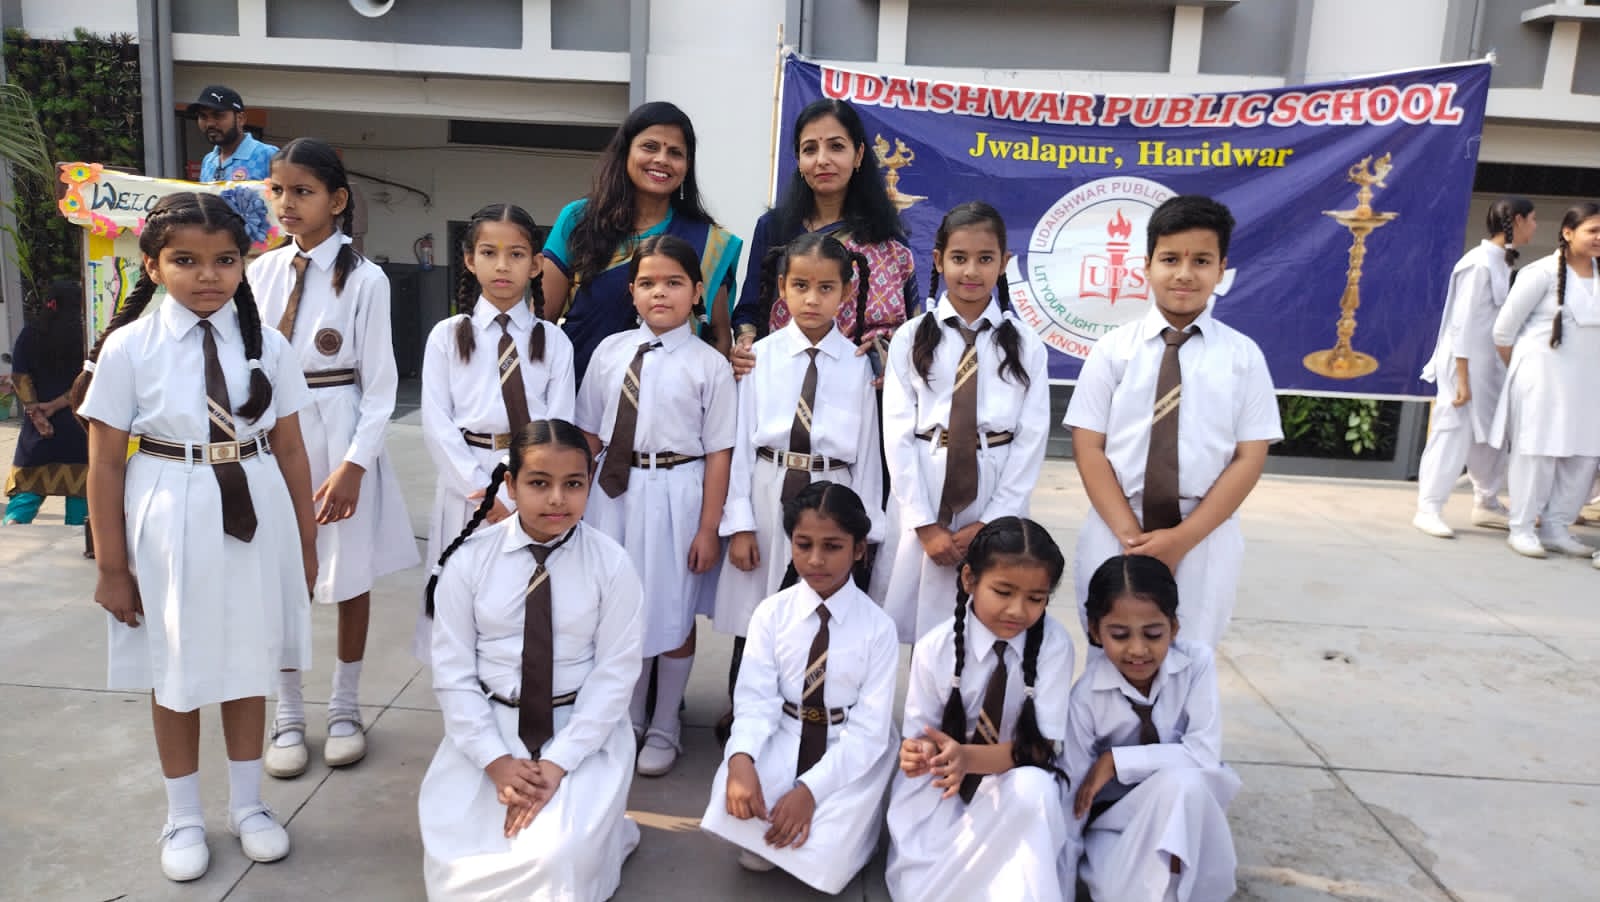 उद्देश्वर पब्लिक स्कूल में धूमधाम से मनाया गया मातृ दिवस